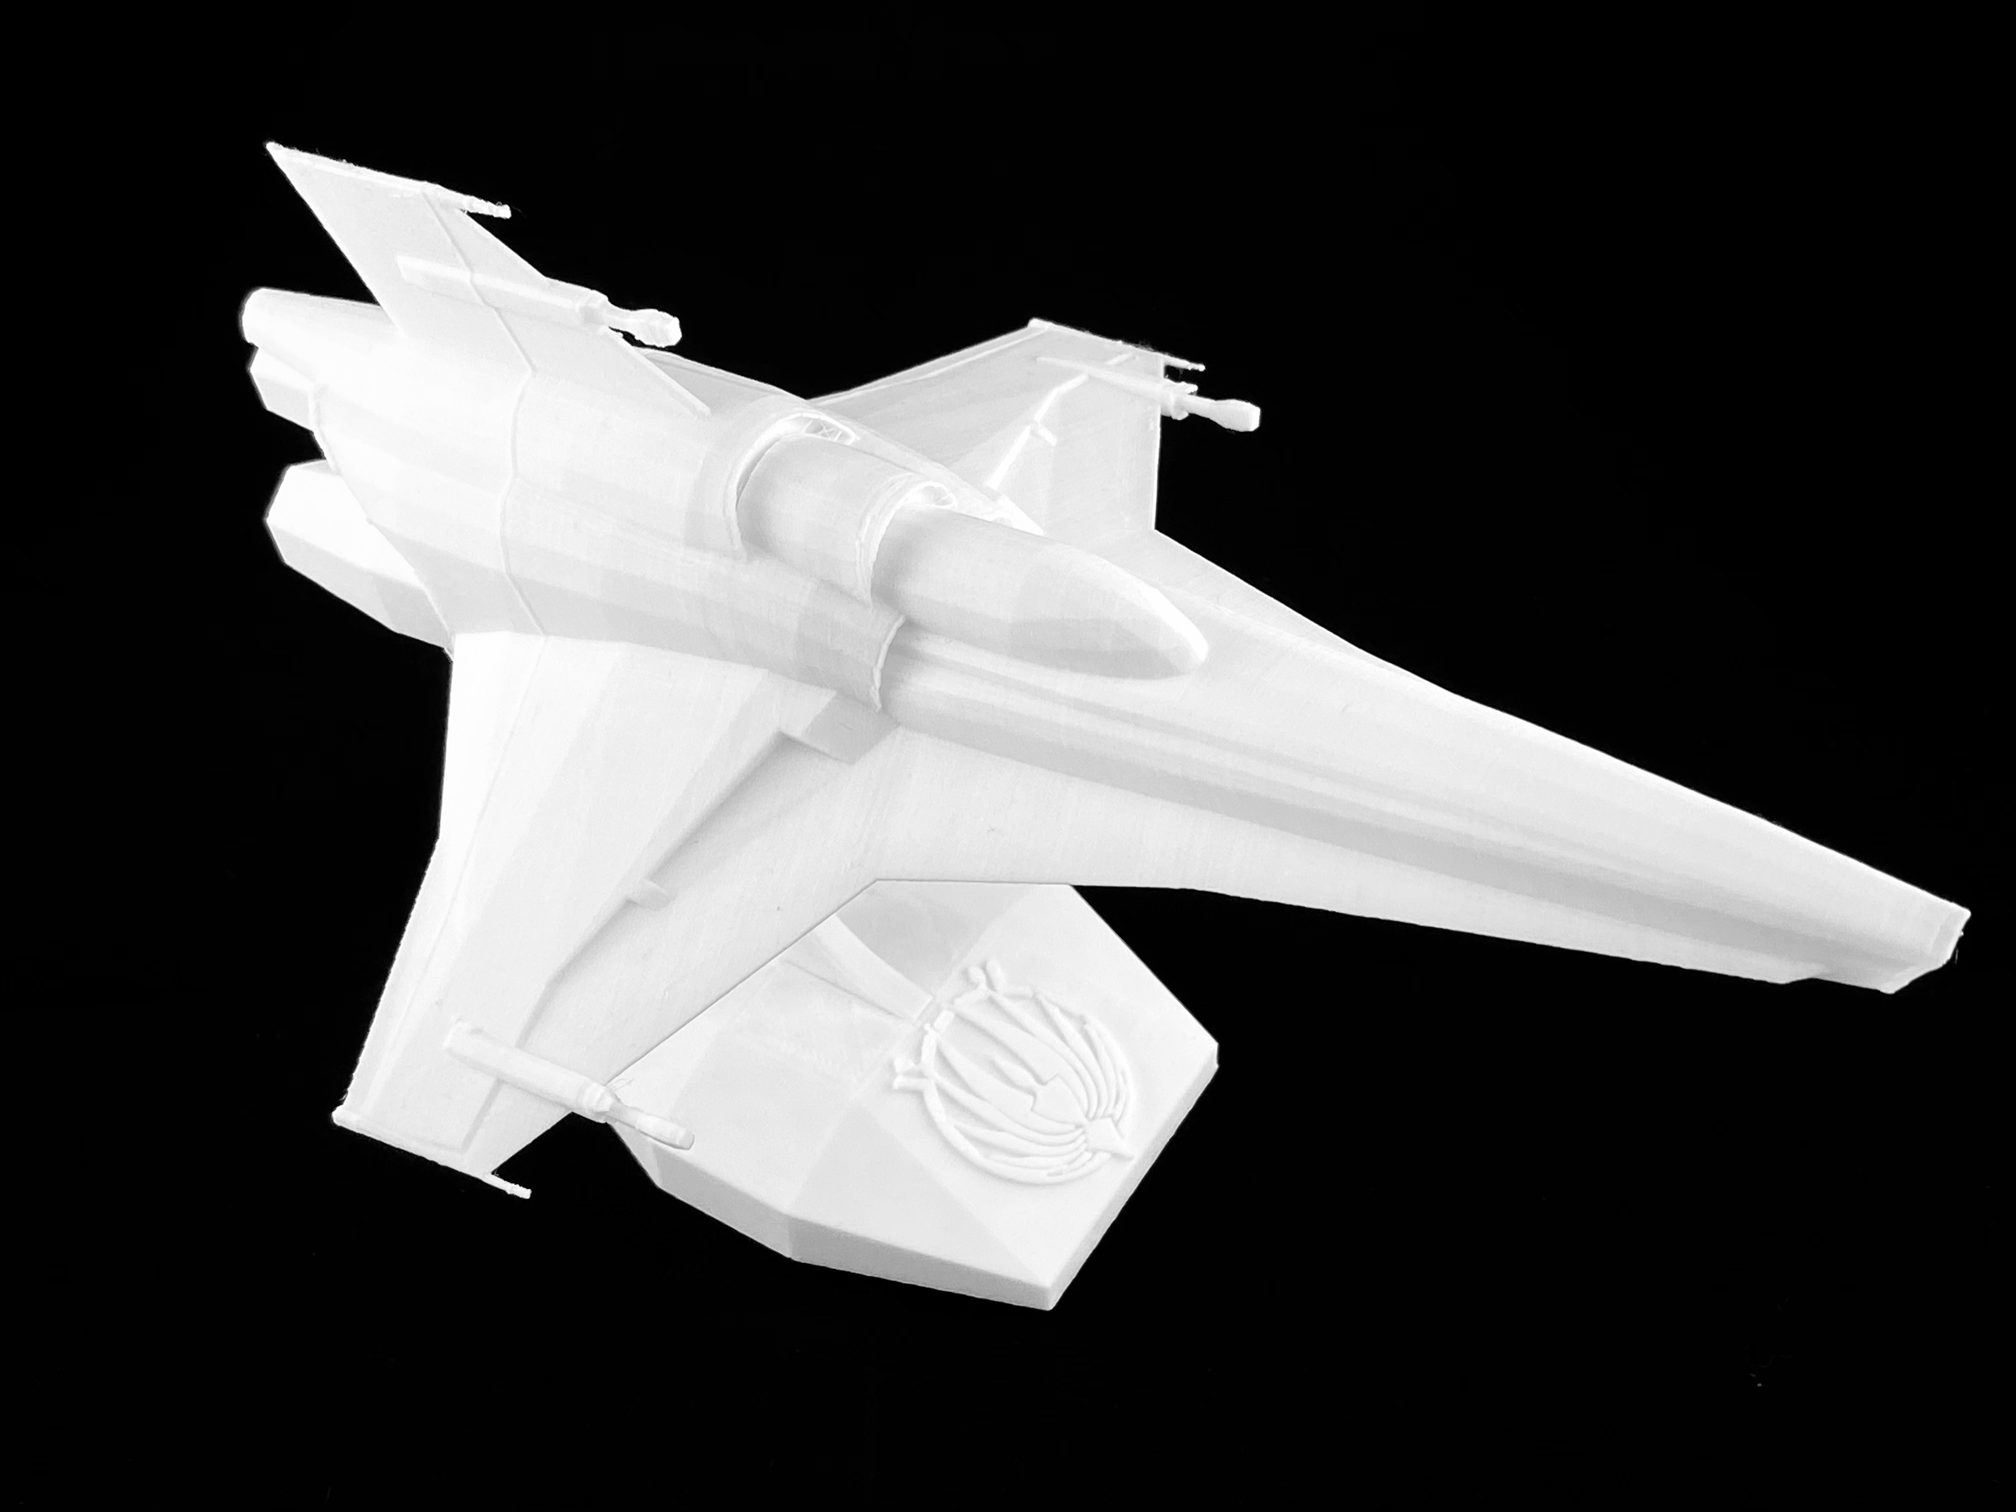 3D printed spaceship